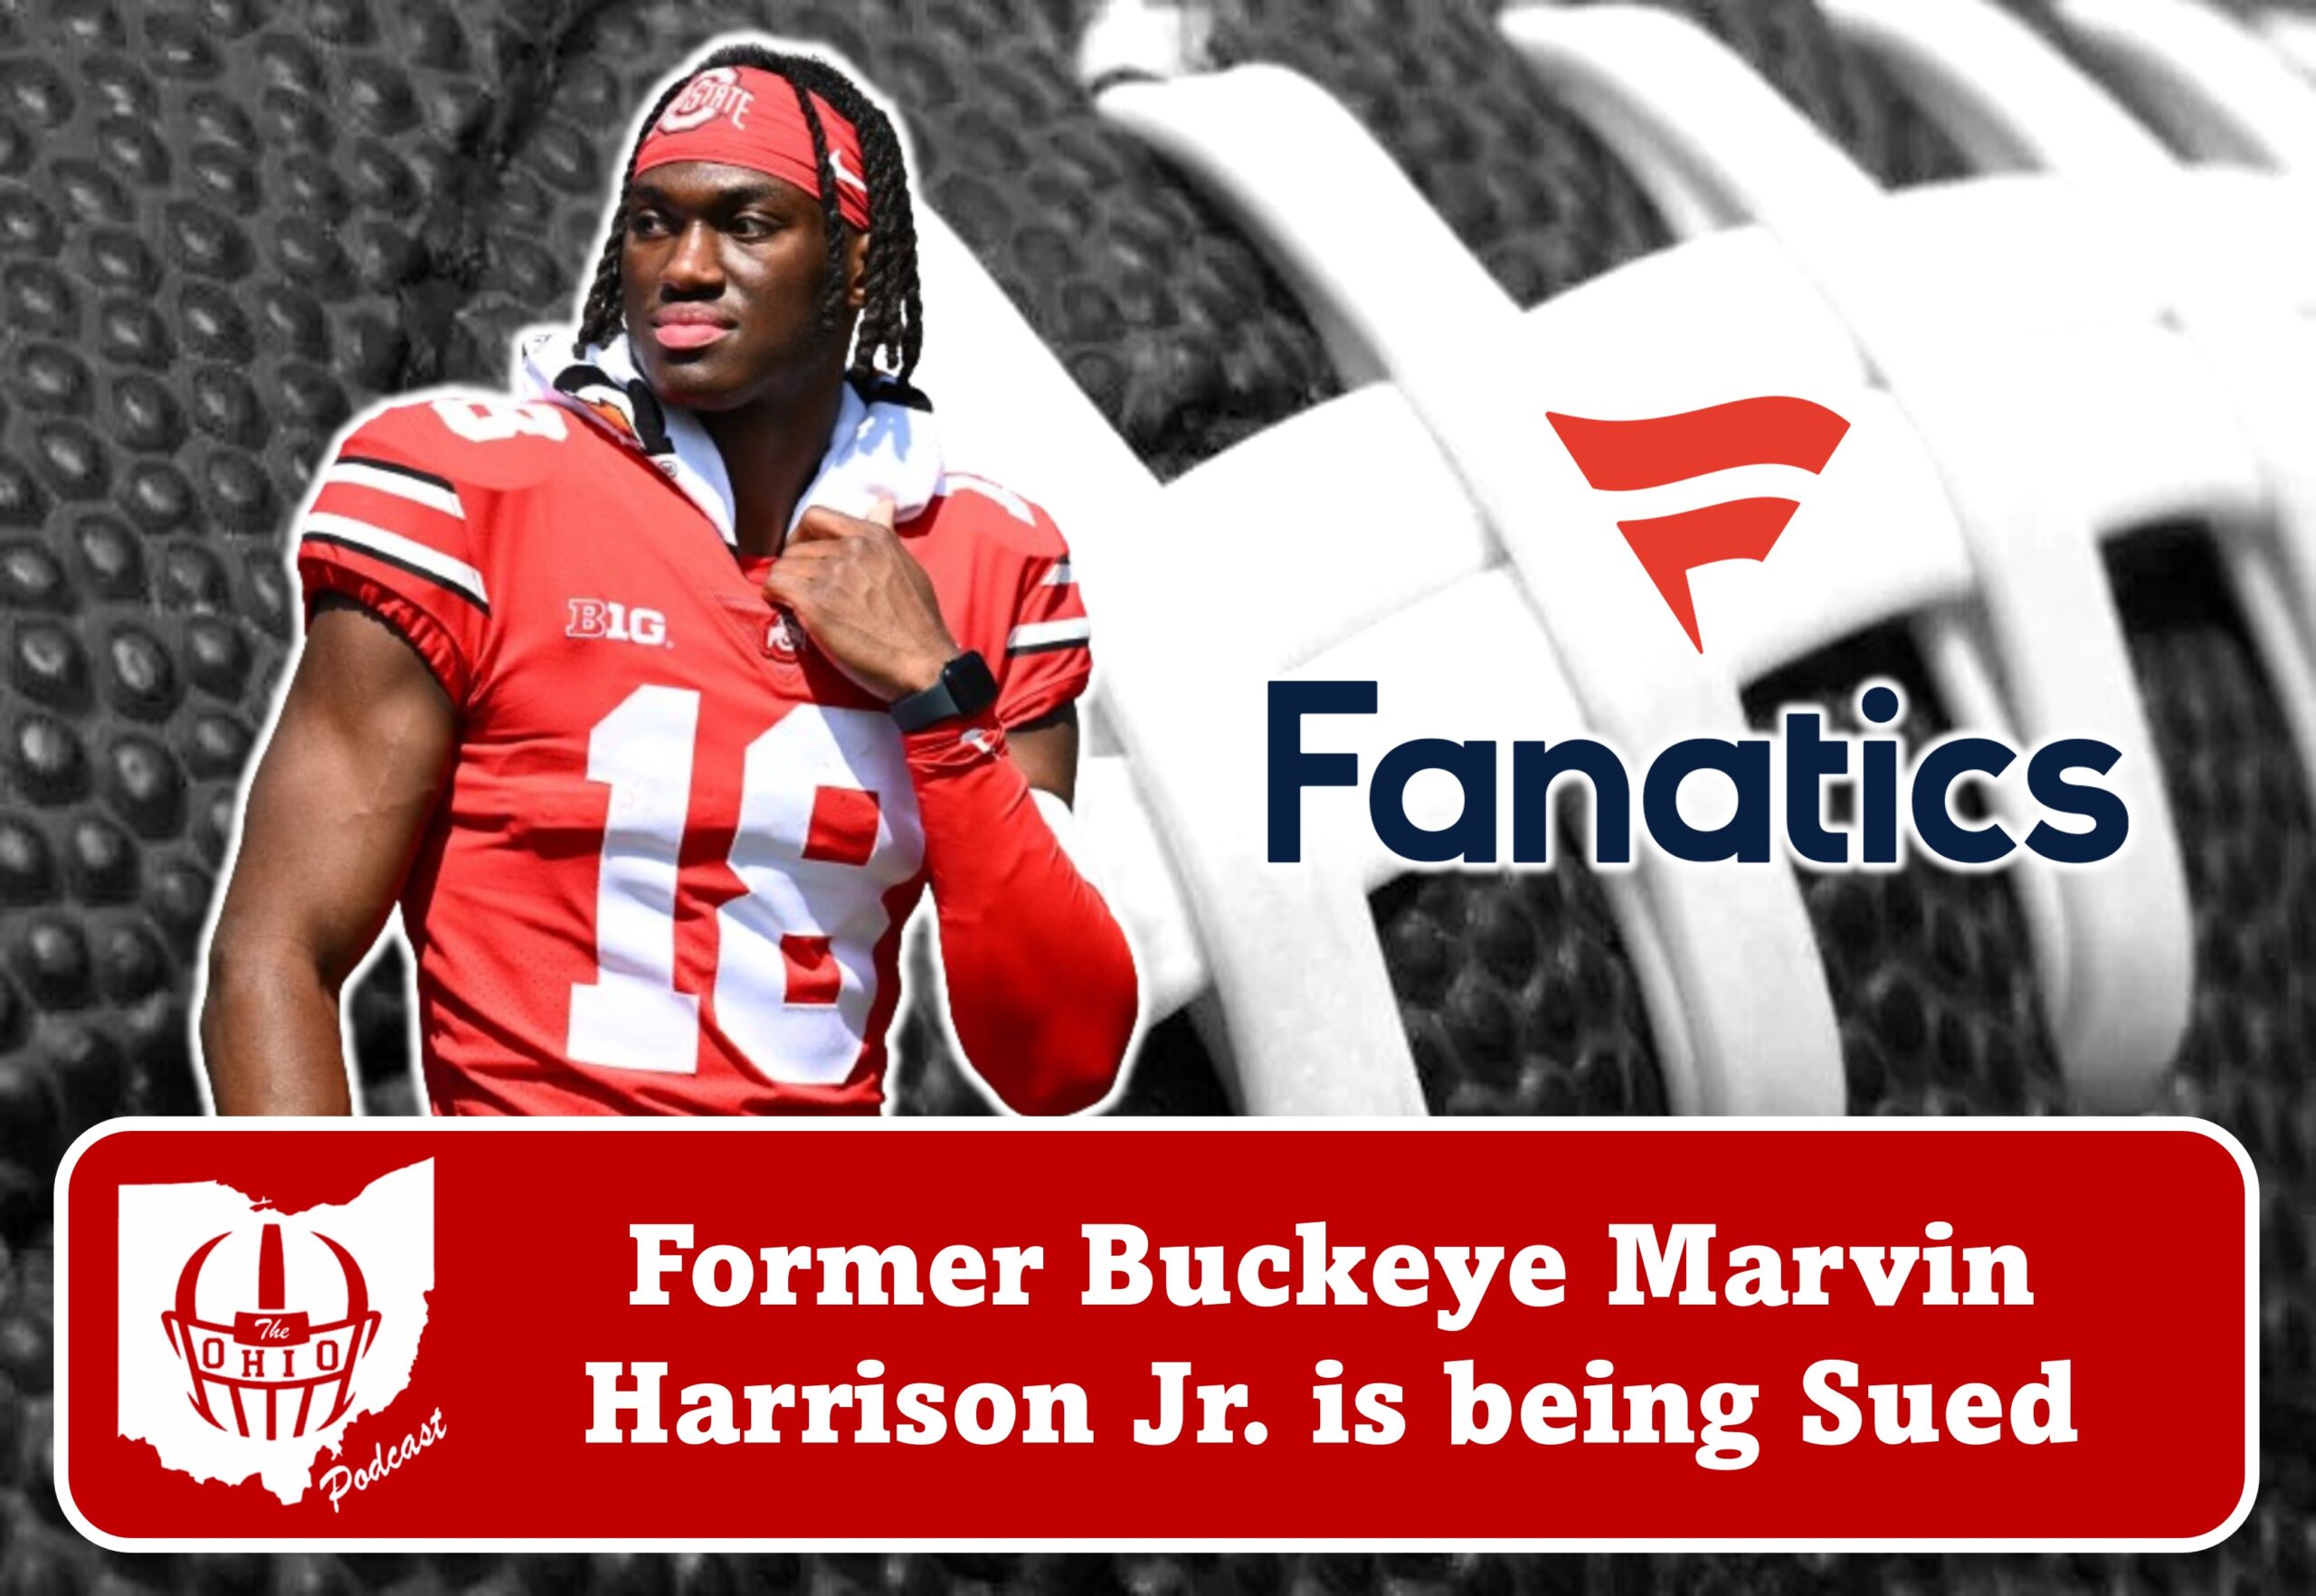 Fanatics Sues Marvin Harrison Jr. Over Contract Breach